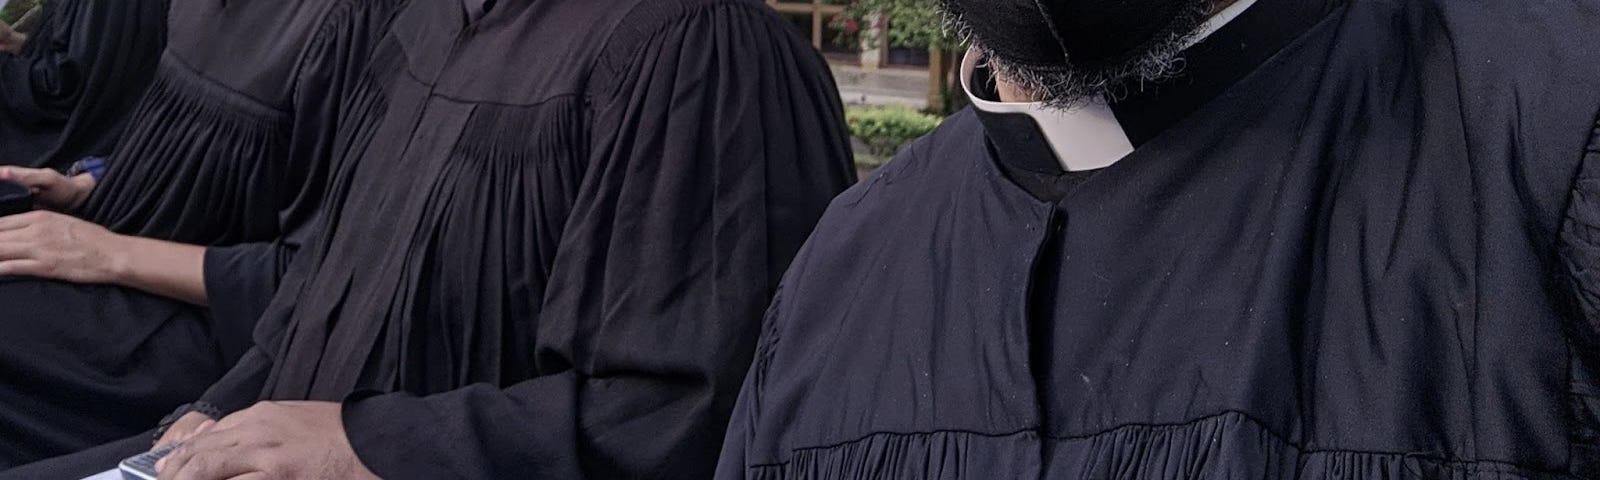 Três silhuetas de homens vestidos com batinas pretas e colarinhos brancos. Não mostra os rostos.